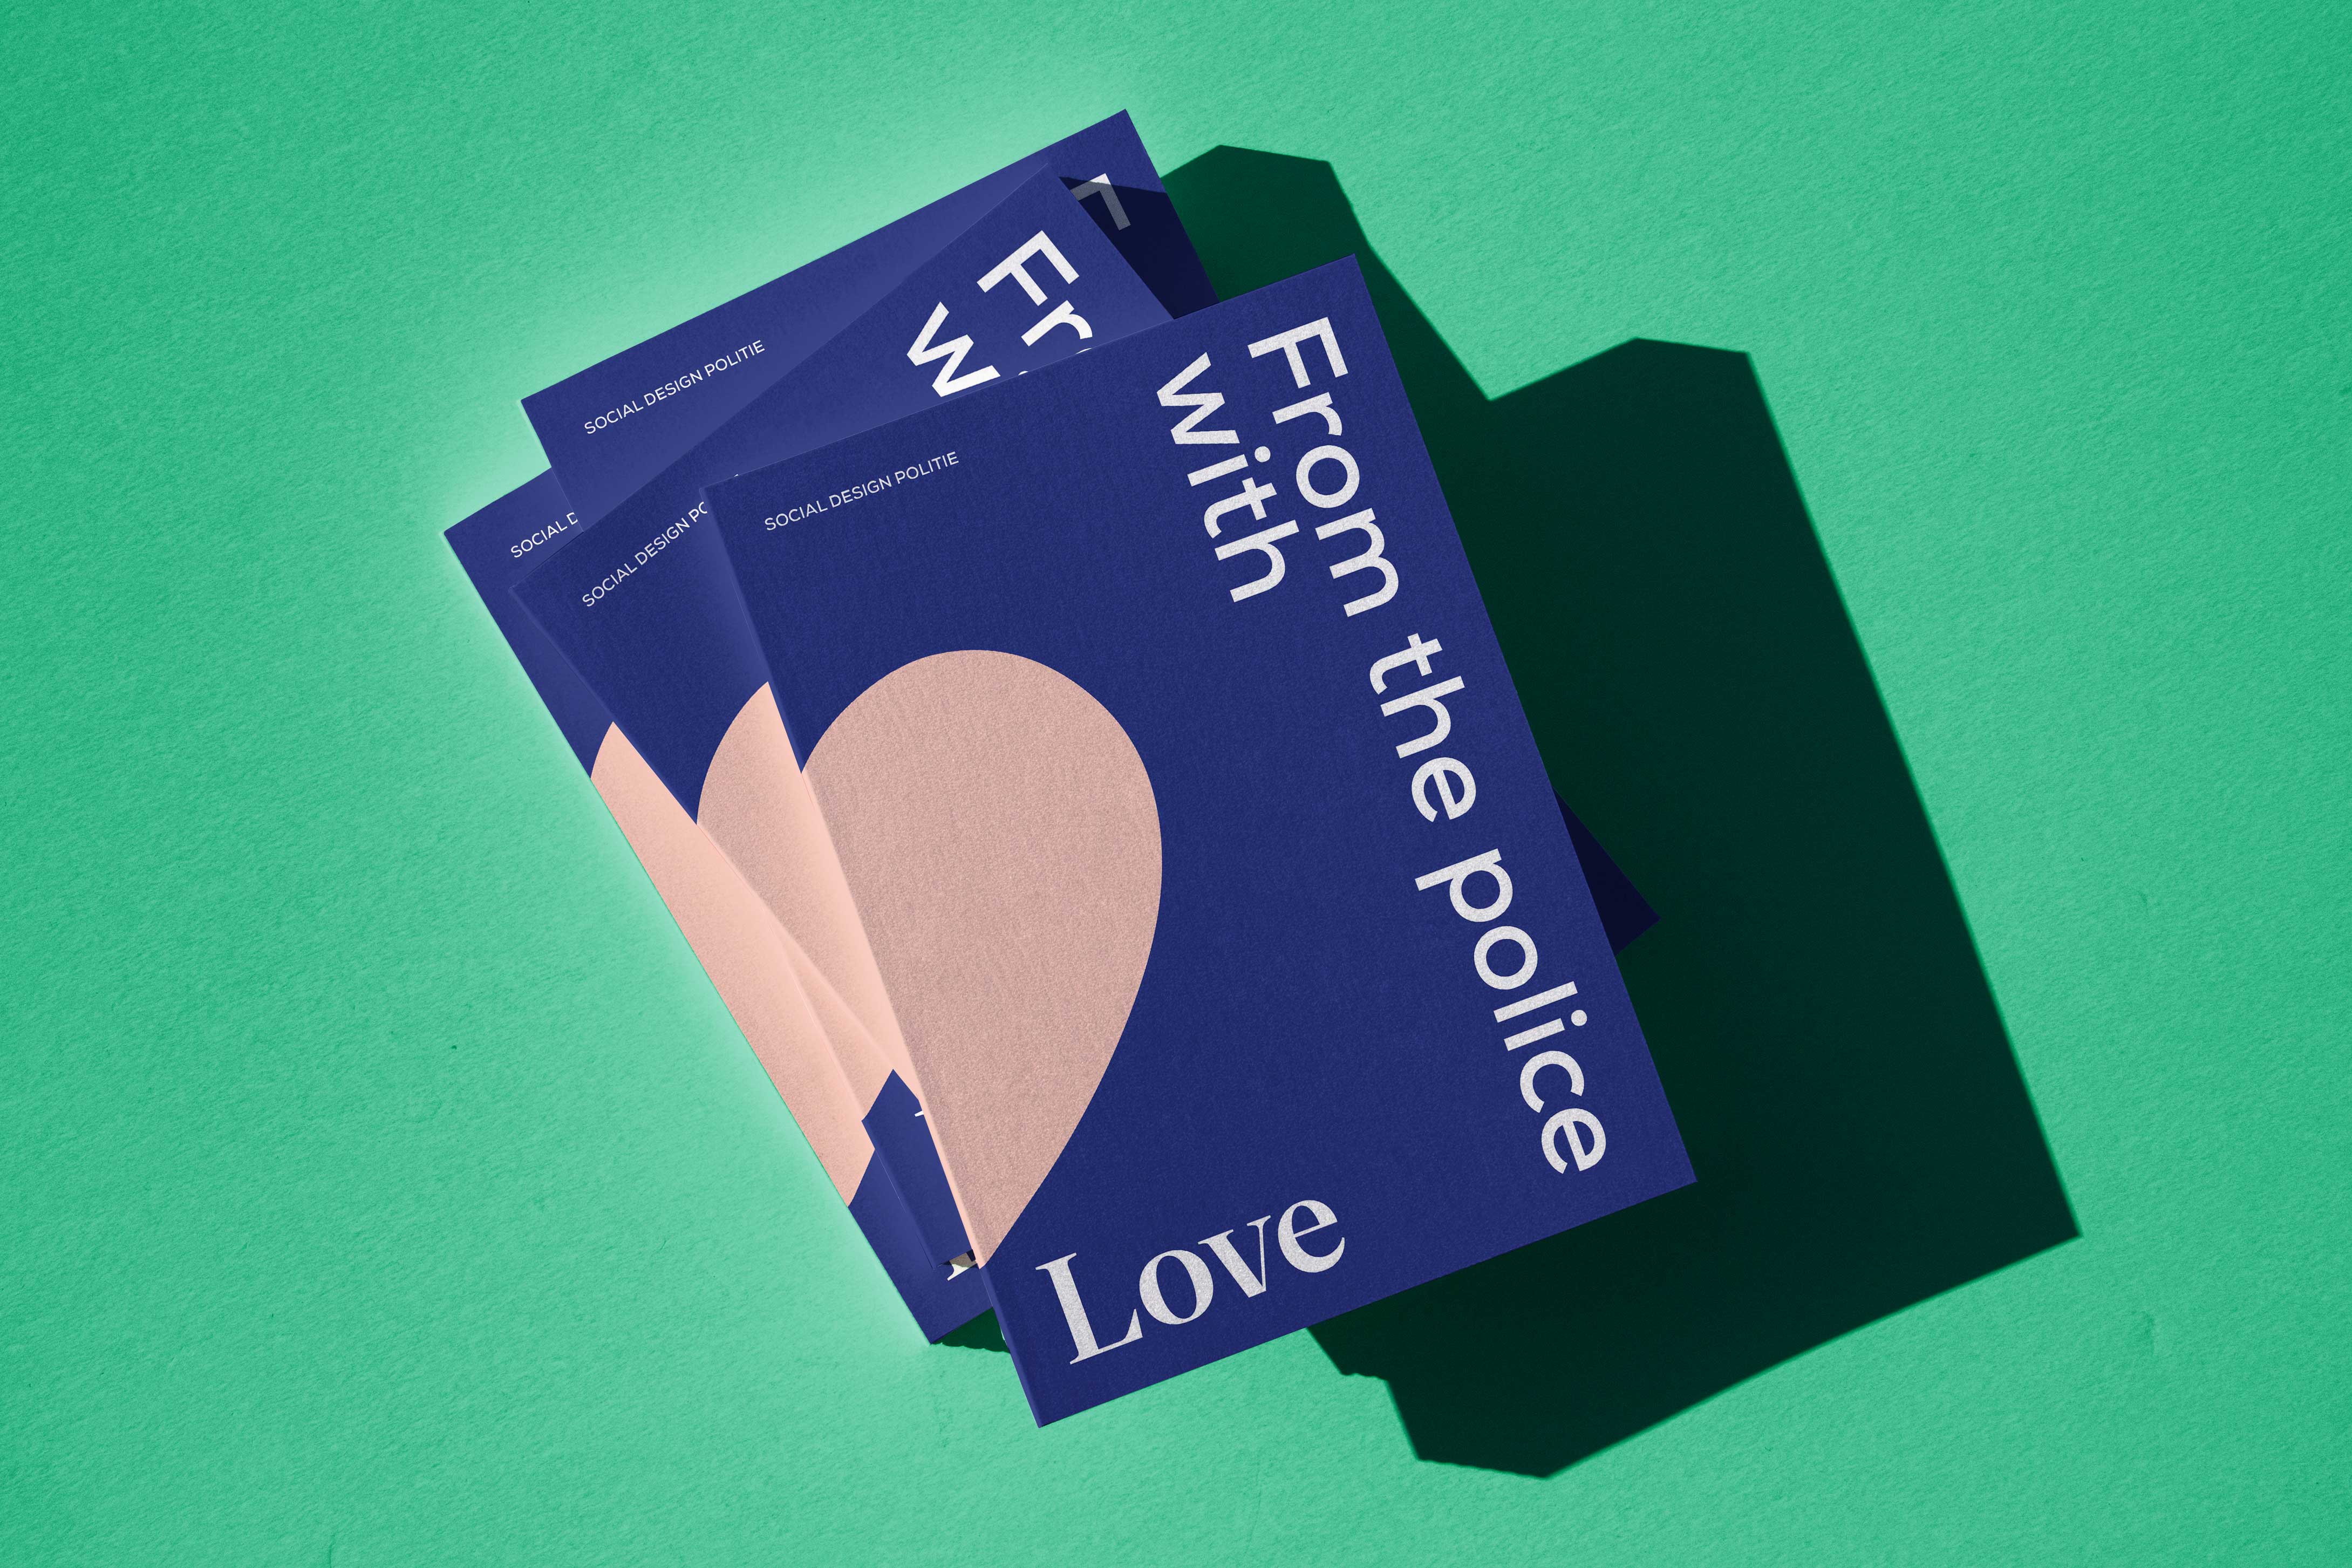 Stapel boeken ‘From the police with love’ van de social design politie.